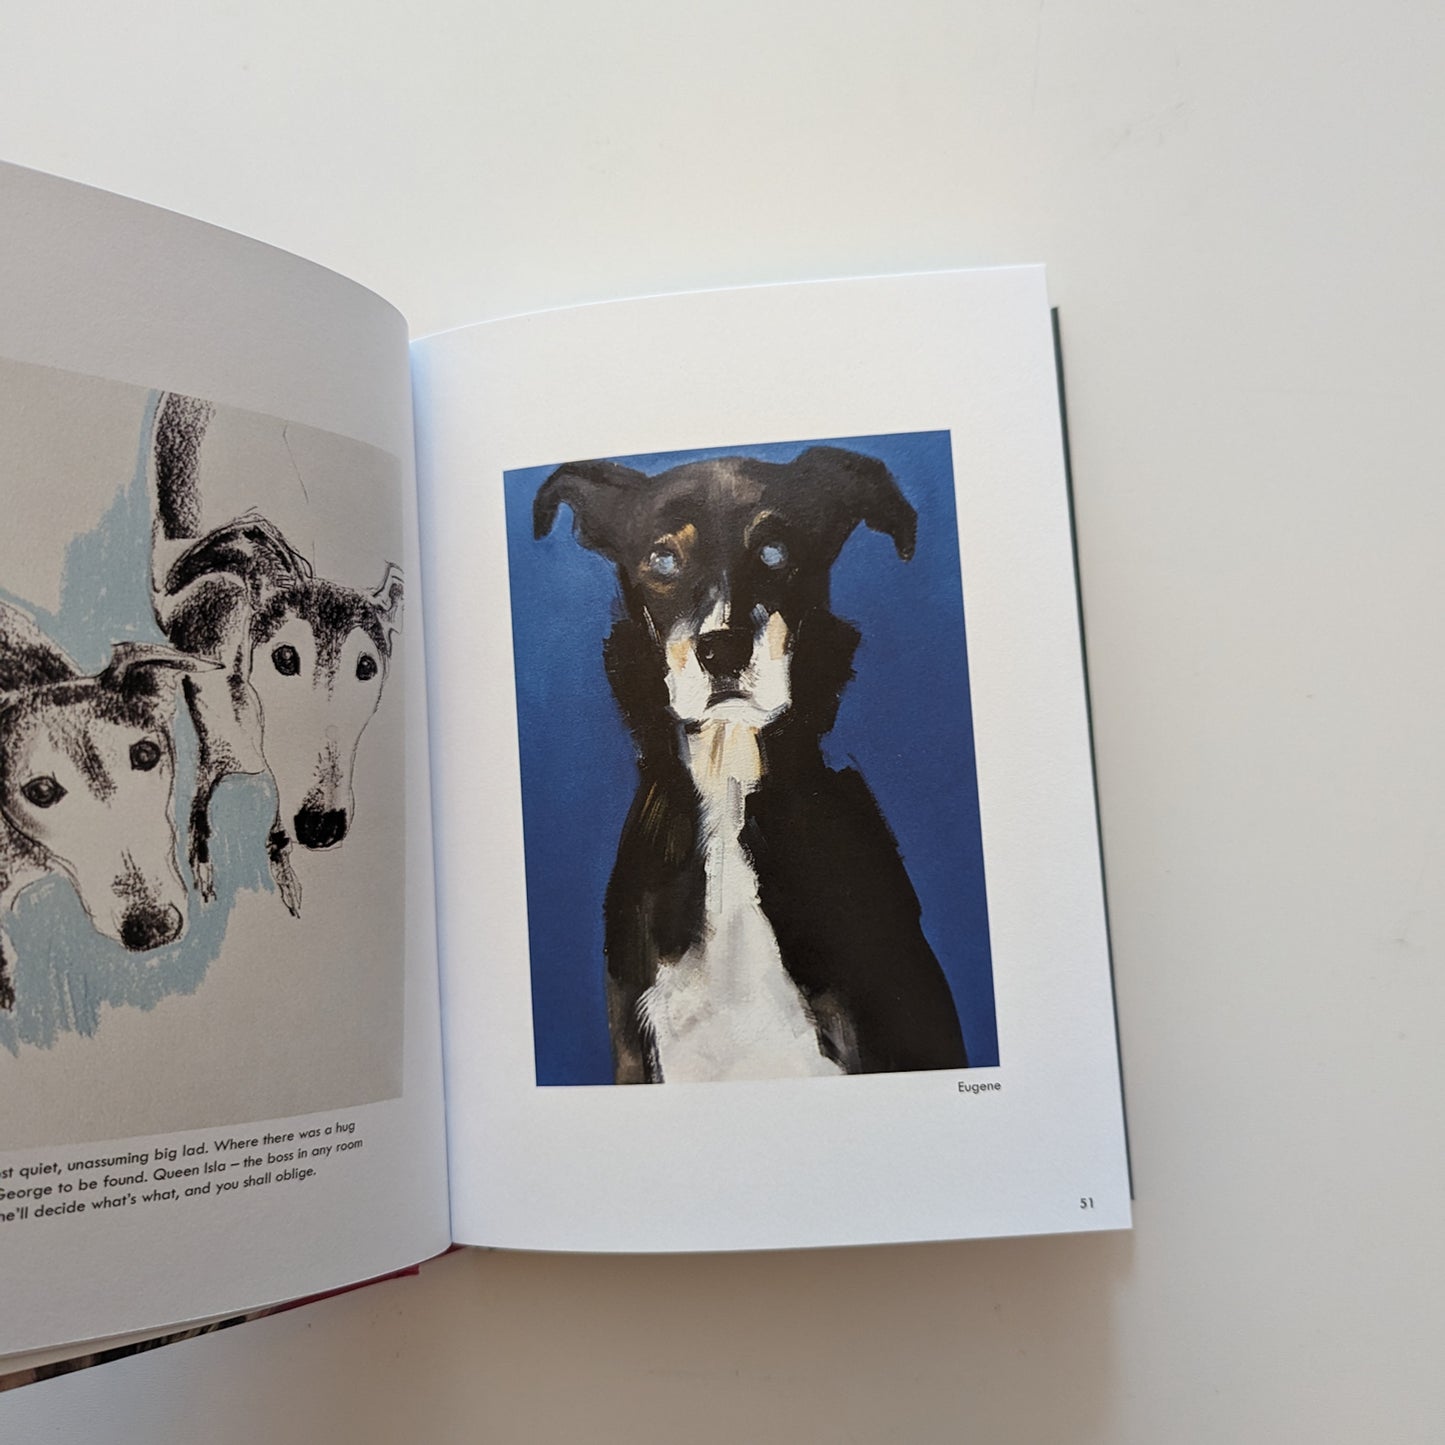 Rescue Dogs Book